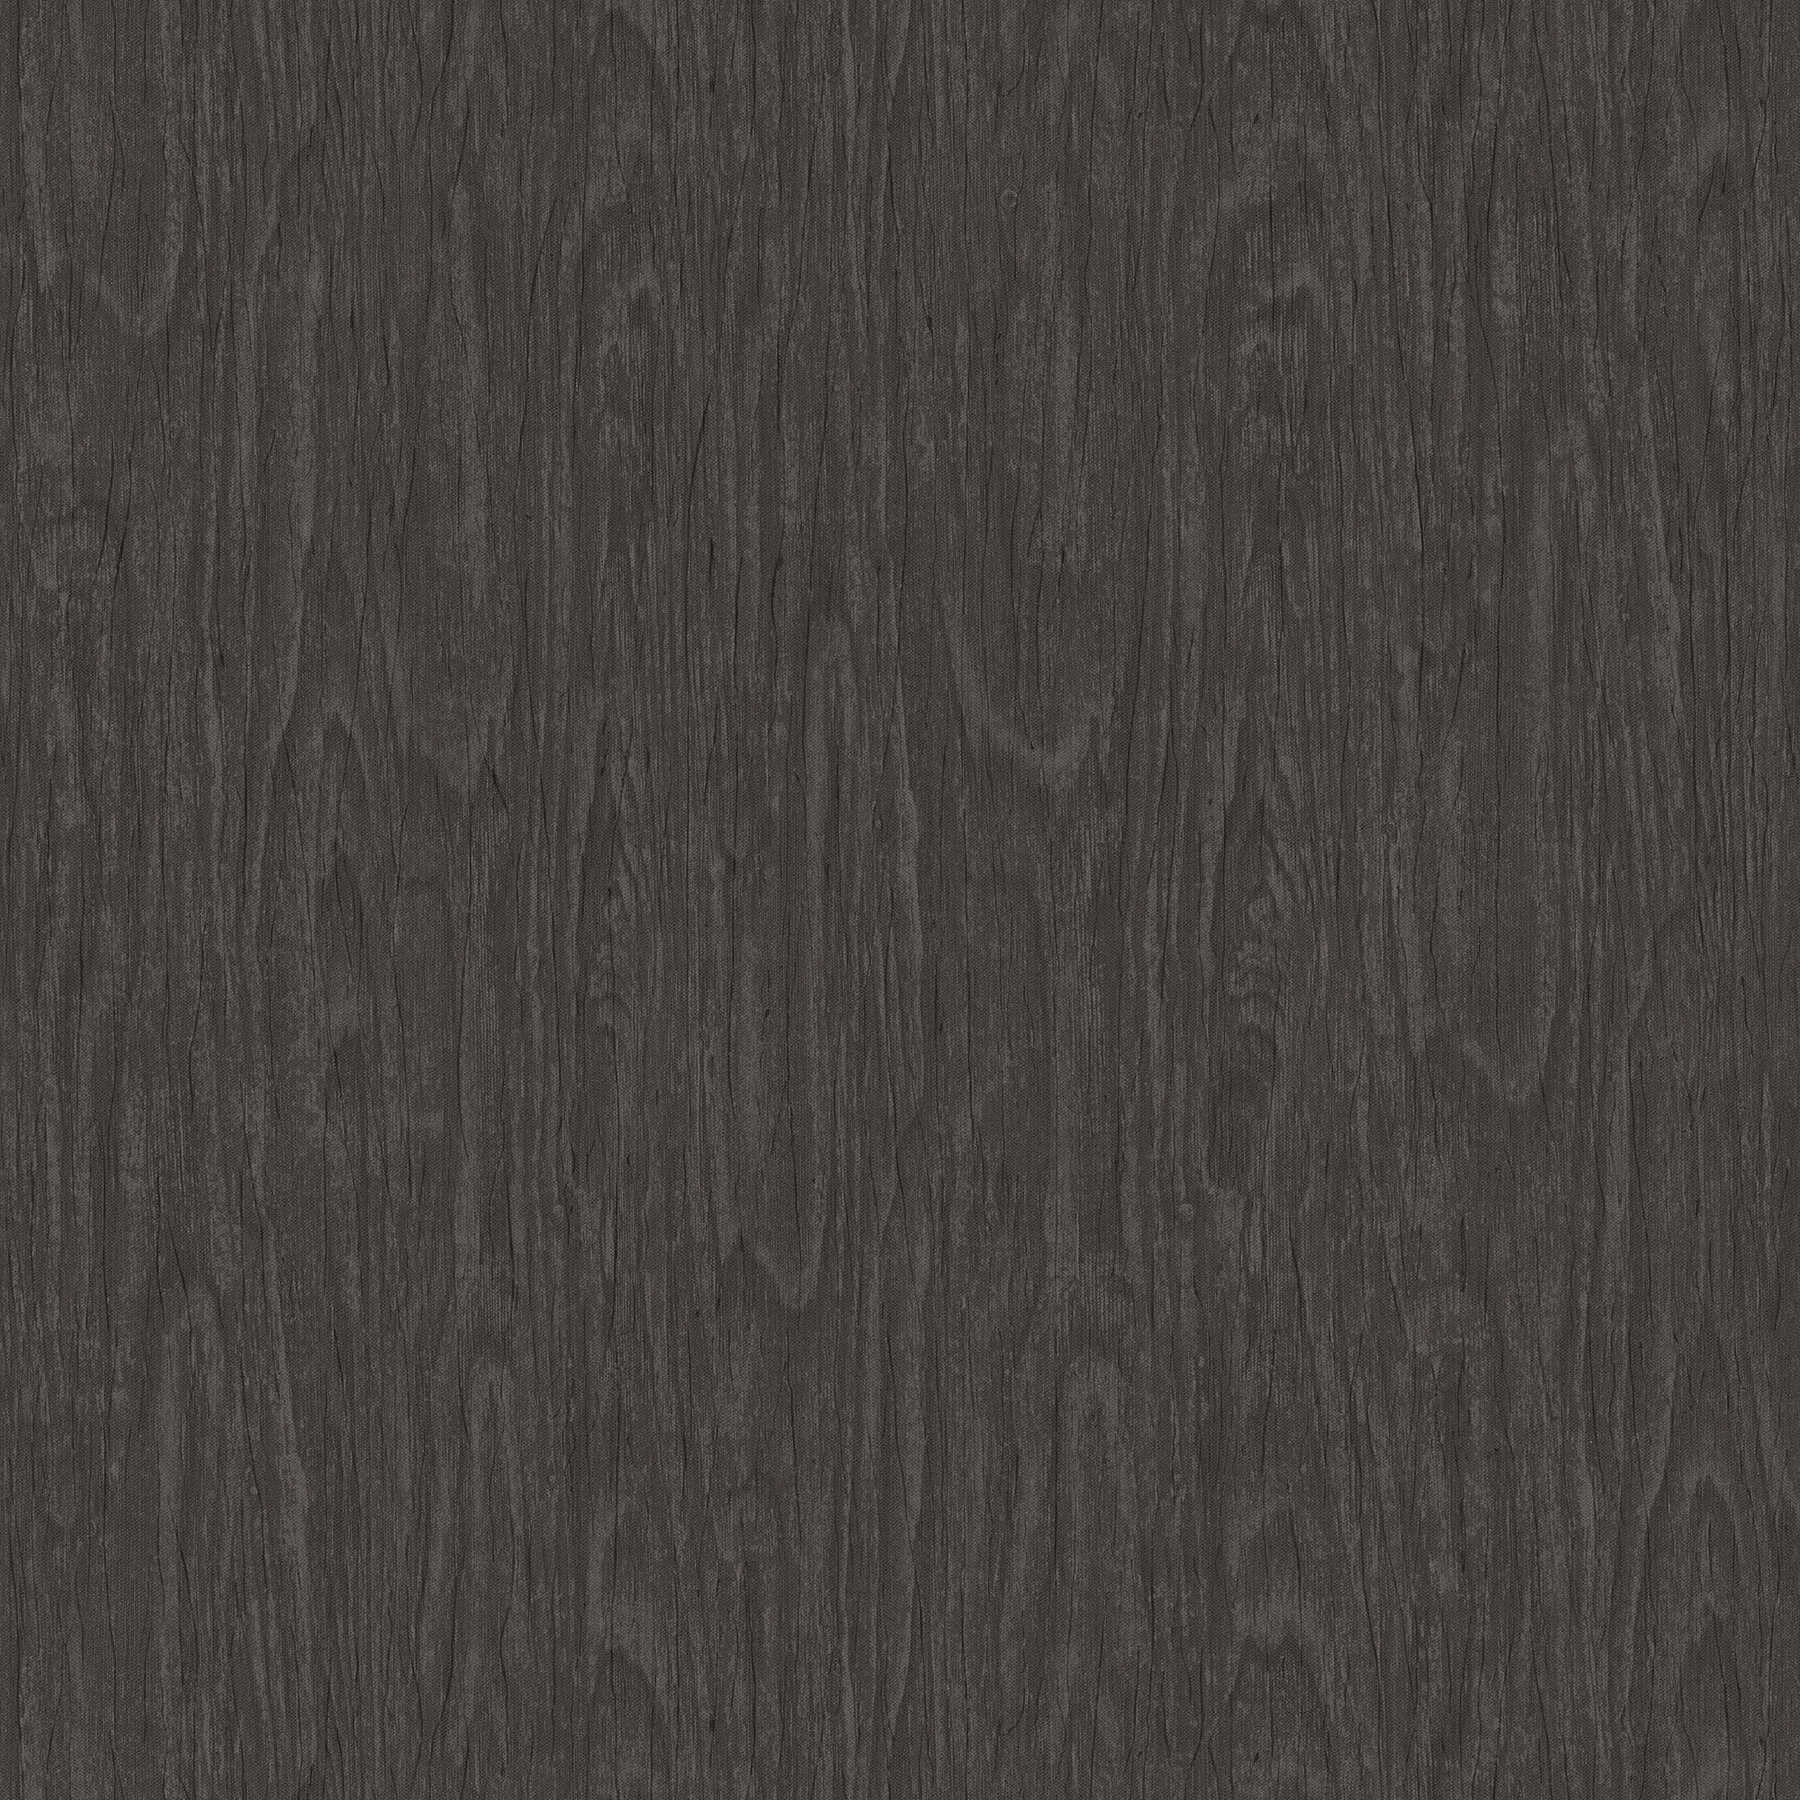 VERSACE Home behang realistische houtlook - grijs, zwart
